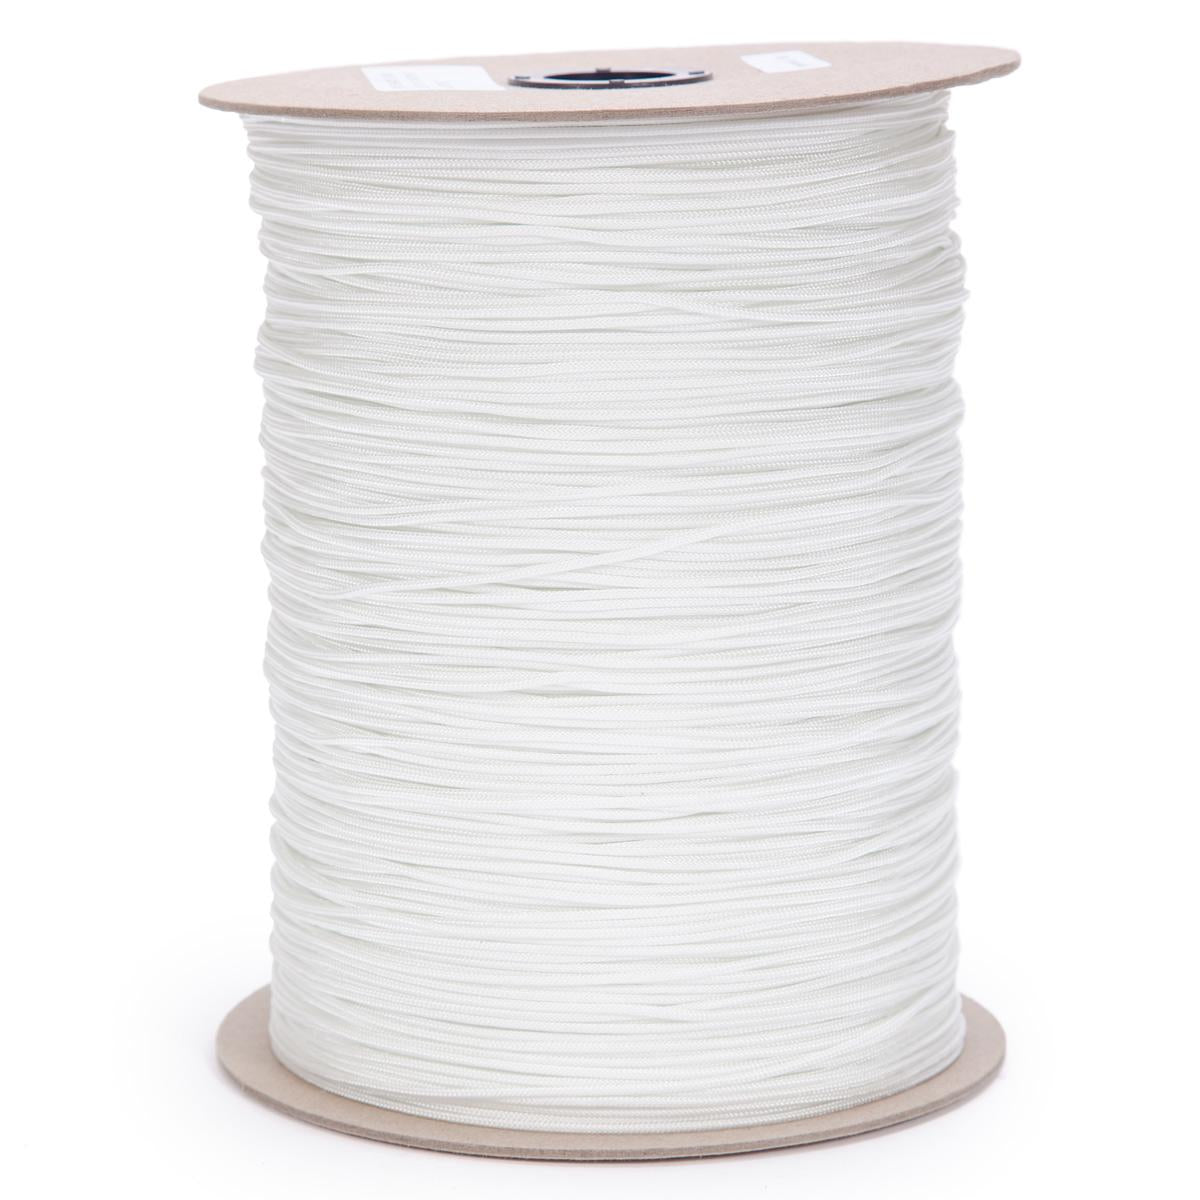 16strands white color nylon cord 2mm